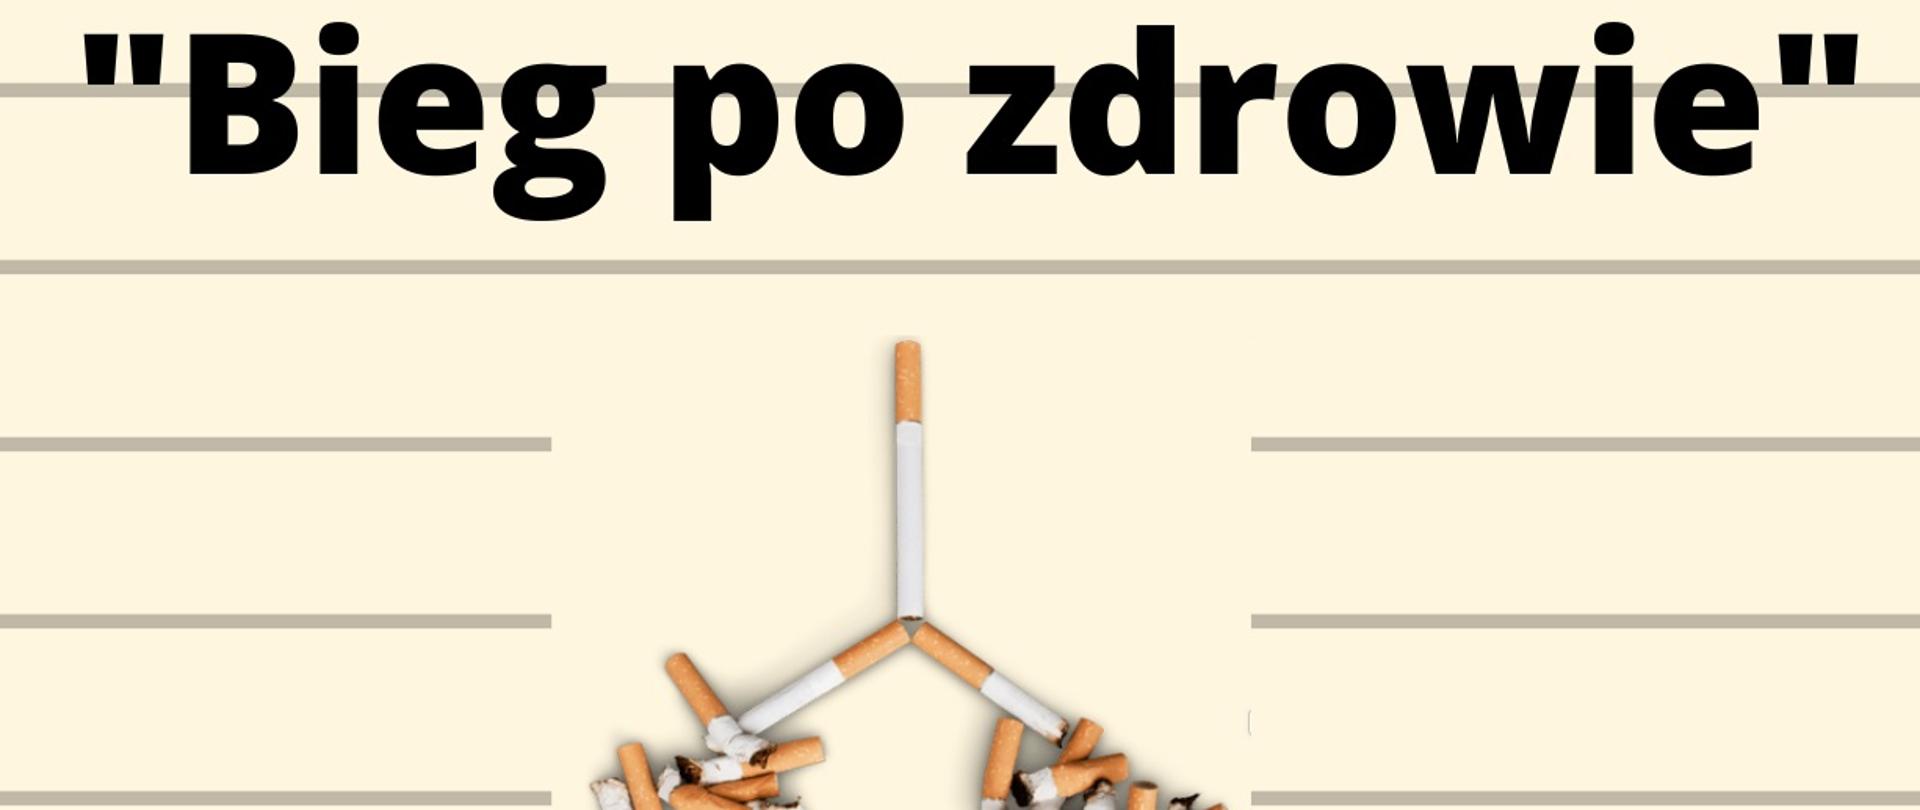 Grafika przedstawia napis "Bieg po zdrowie" oraz płuca ułożone z papierosów